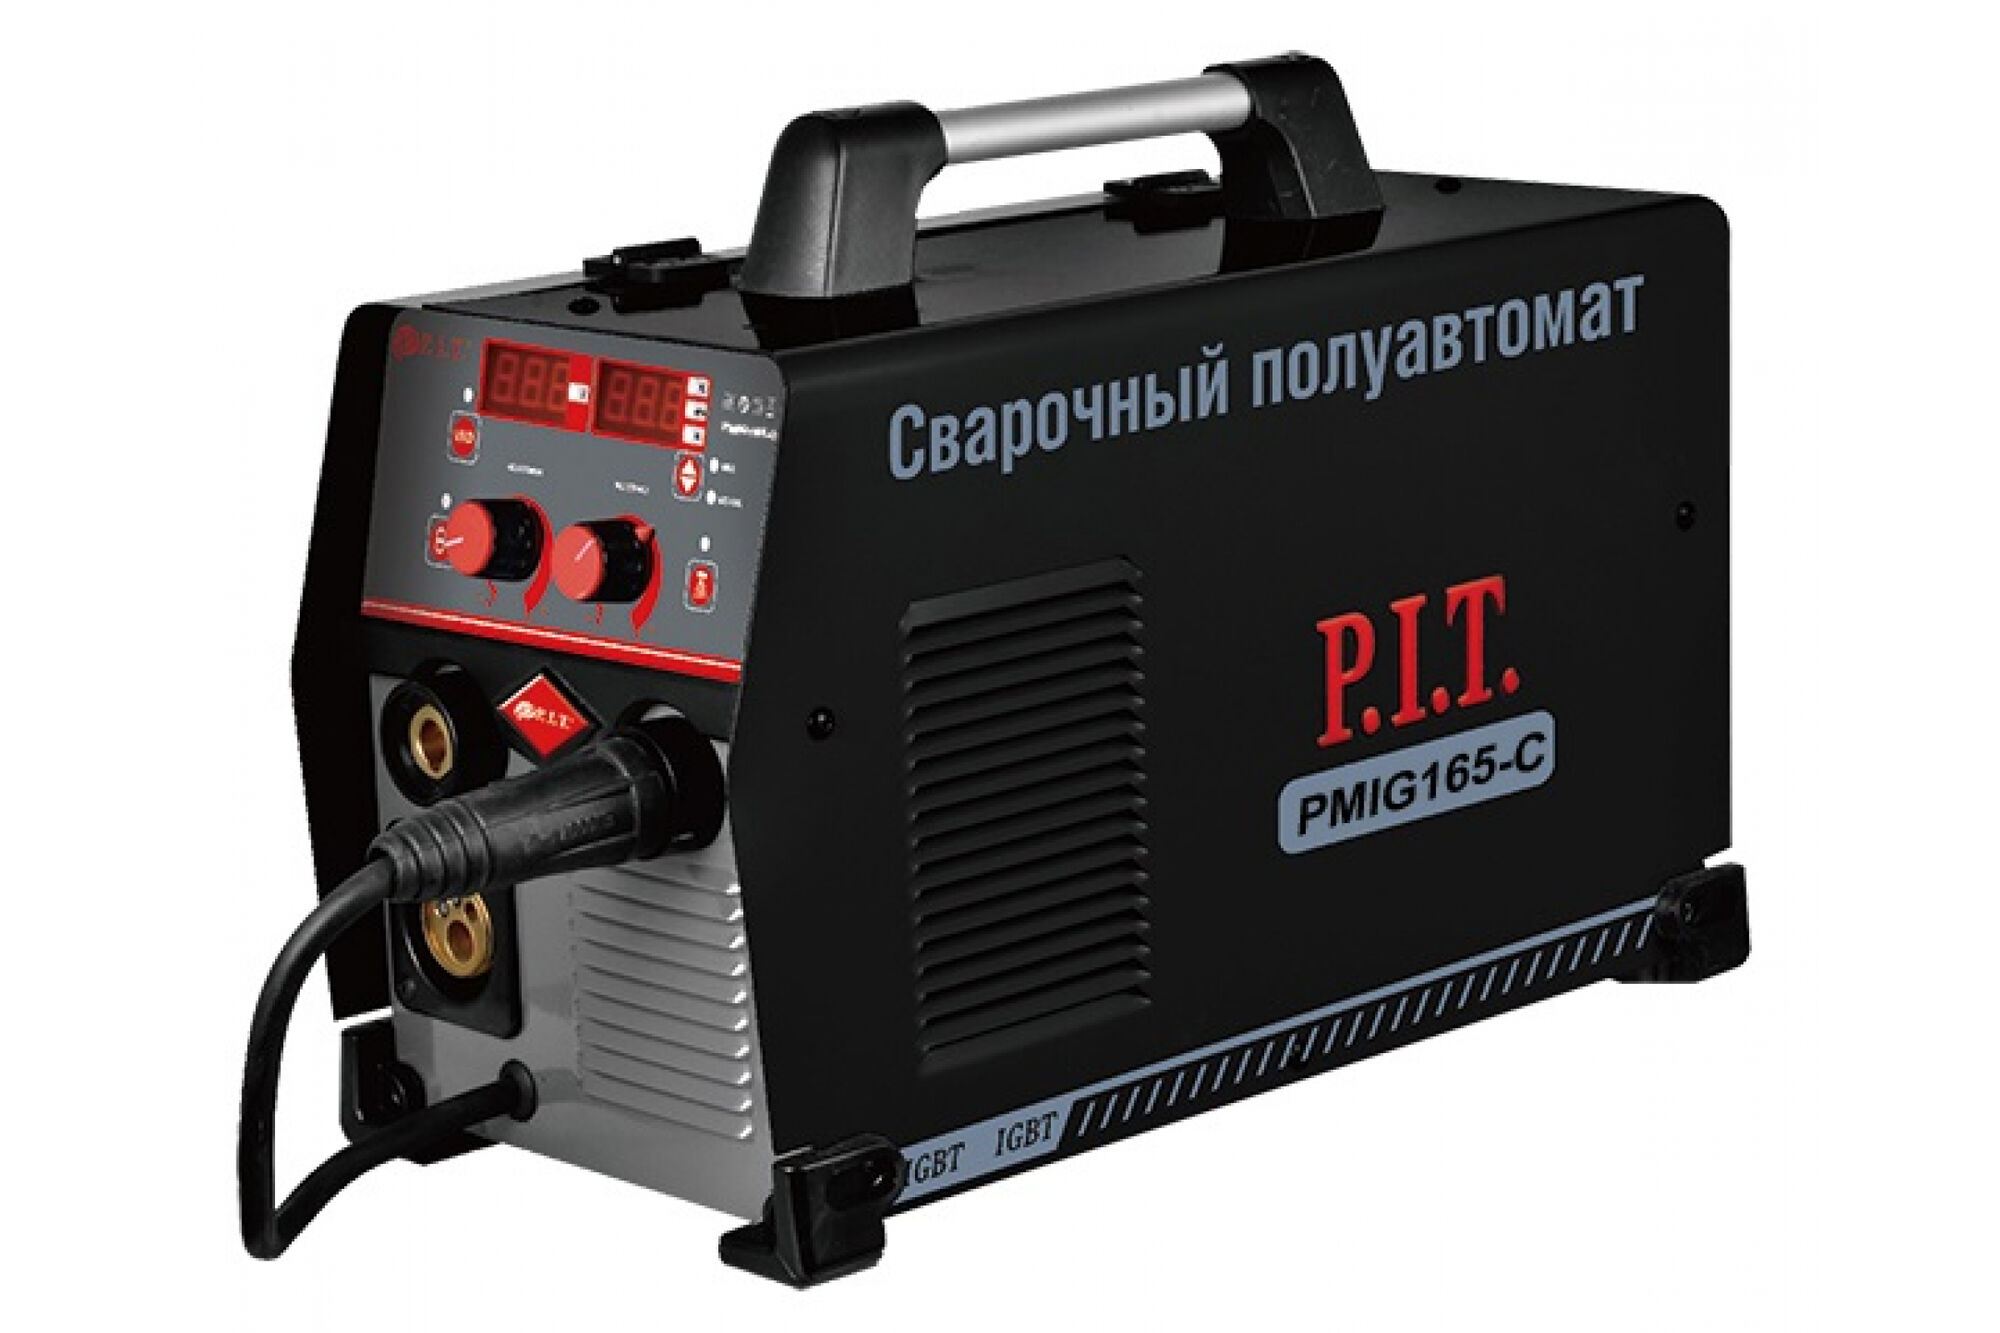 Сварочный полуавтомат P.I.T. PMIG165-C